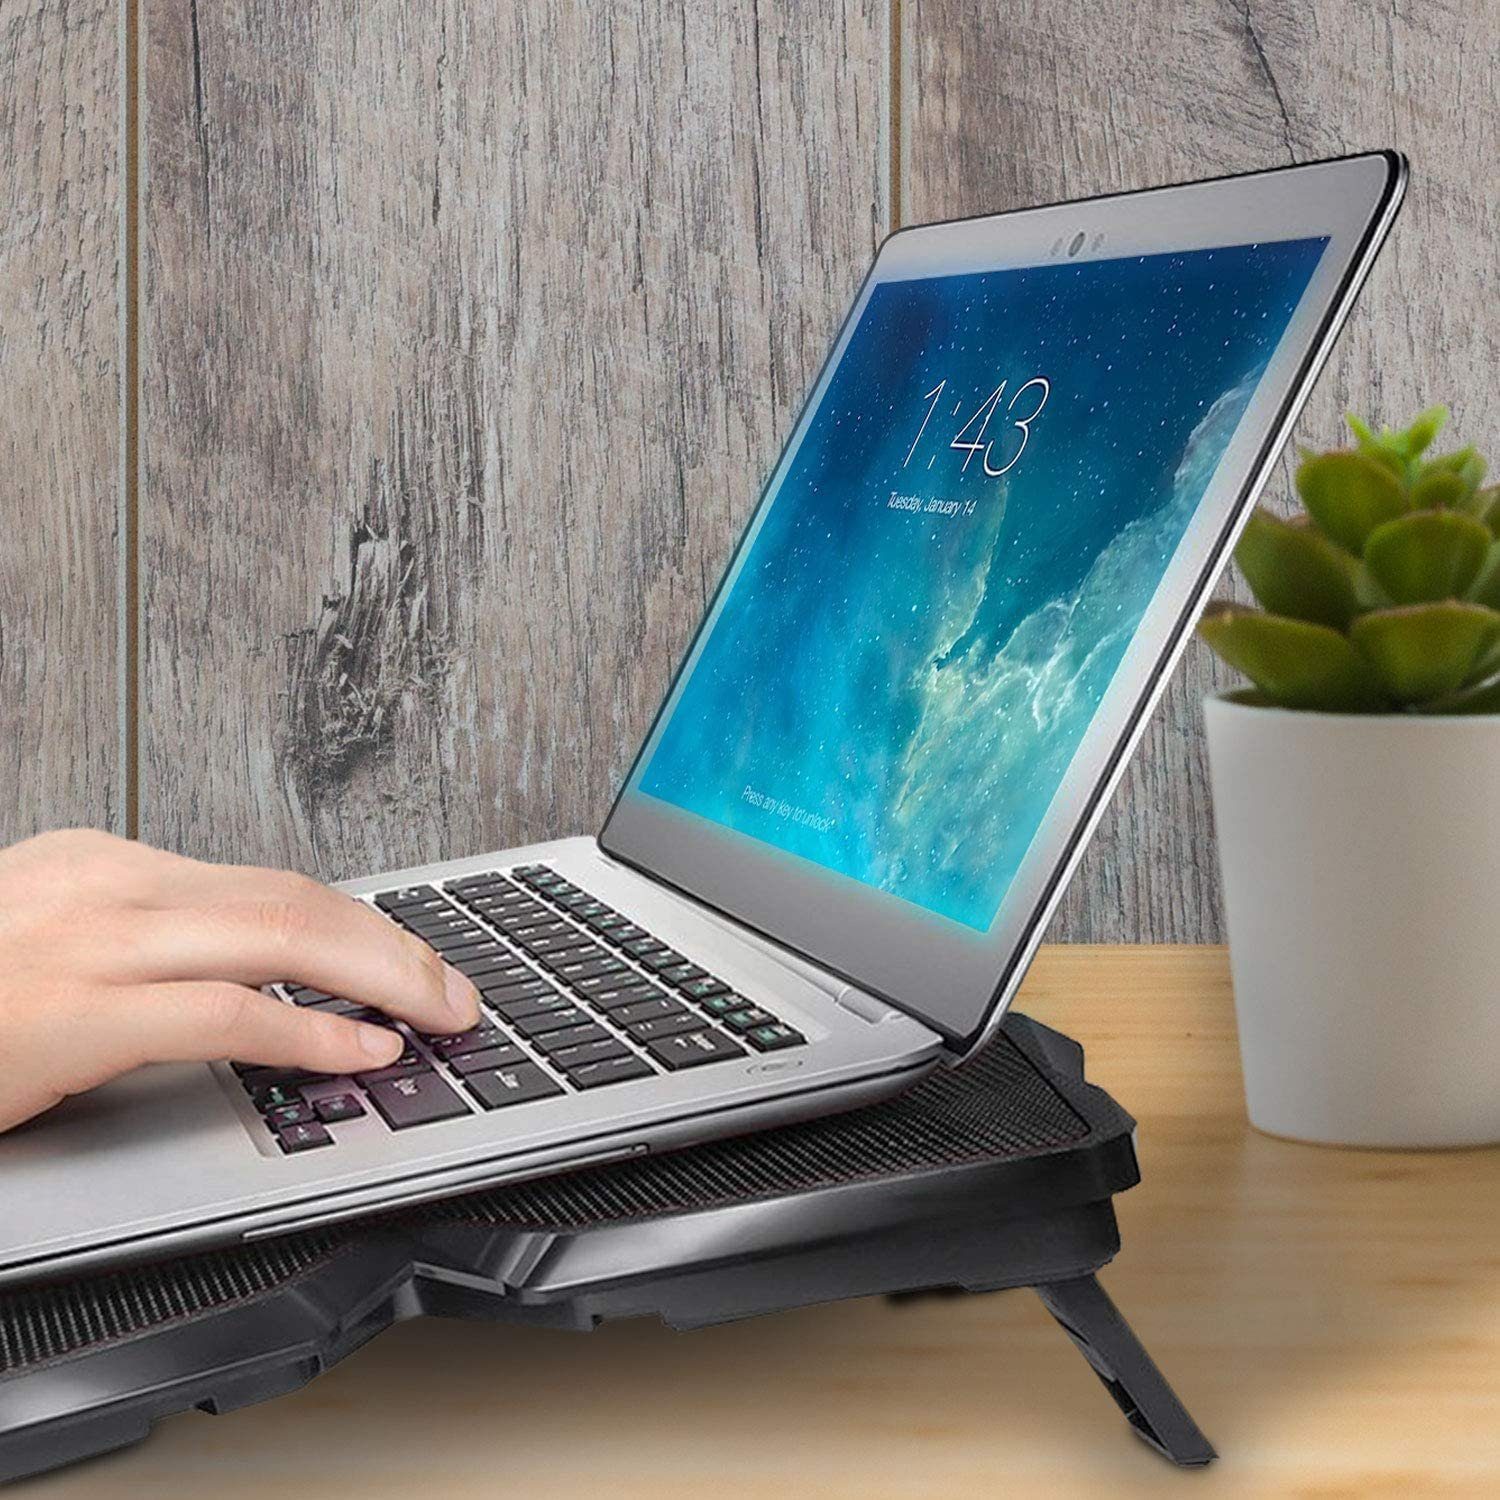 KLIM Notebook-Kühler Wind, Metall leistungsstärkste der Weiß Laptop-Kühlpad – Kühlventilator schnelle